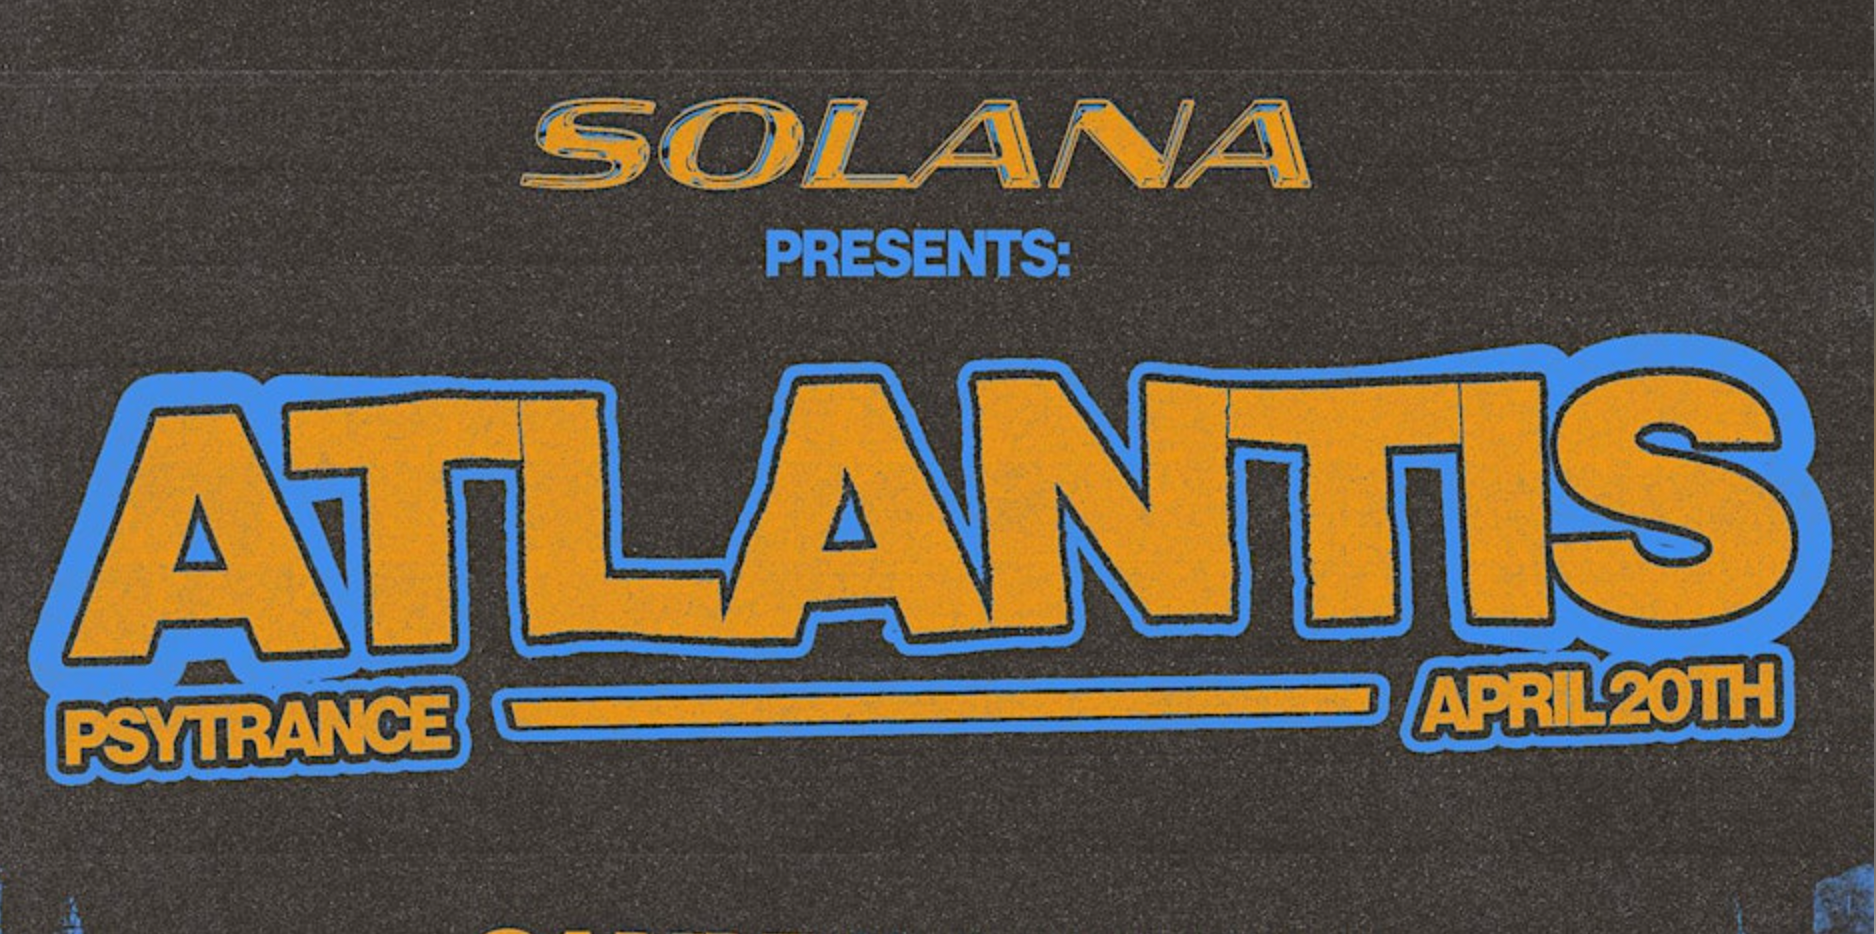 Solana Collective. presents: ATLANTIS - Página frontal